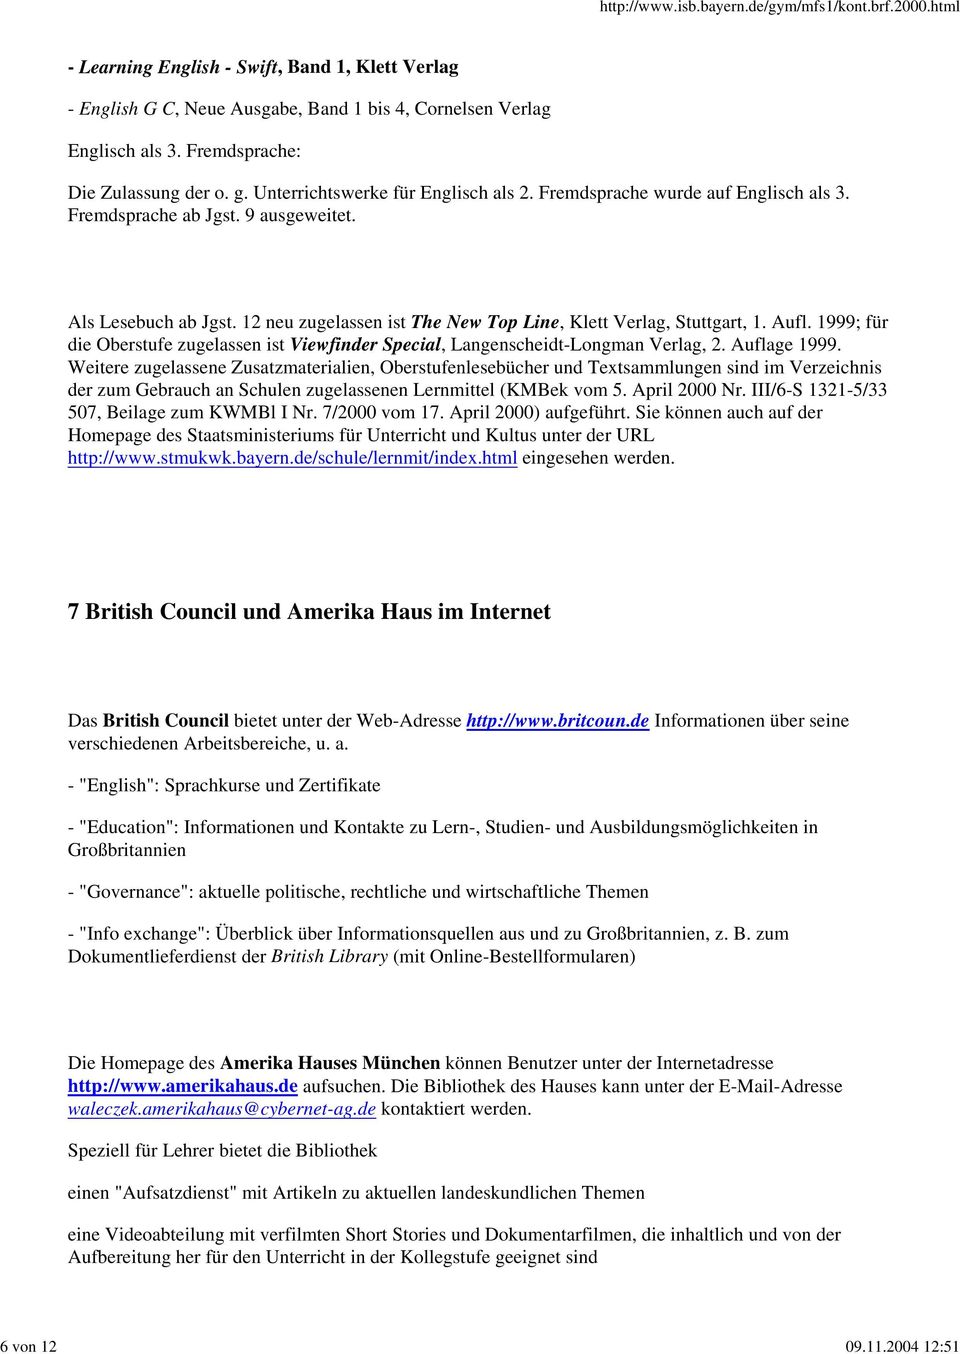 12 neu zugelassen ist The New Top Line, Klett Verlag, Stuttgart, 1. Aufl. 1999; für die Oberstufe zugelassen ist Viewfinder Special, Langenscheidt-Longman Verlag, 2. Auflage 1999.